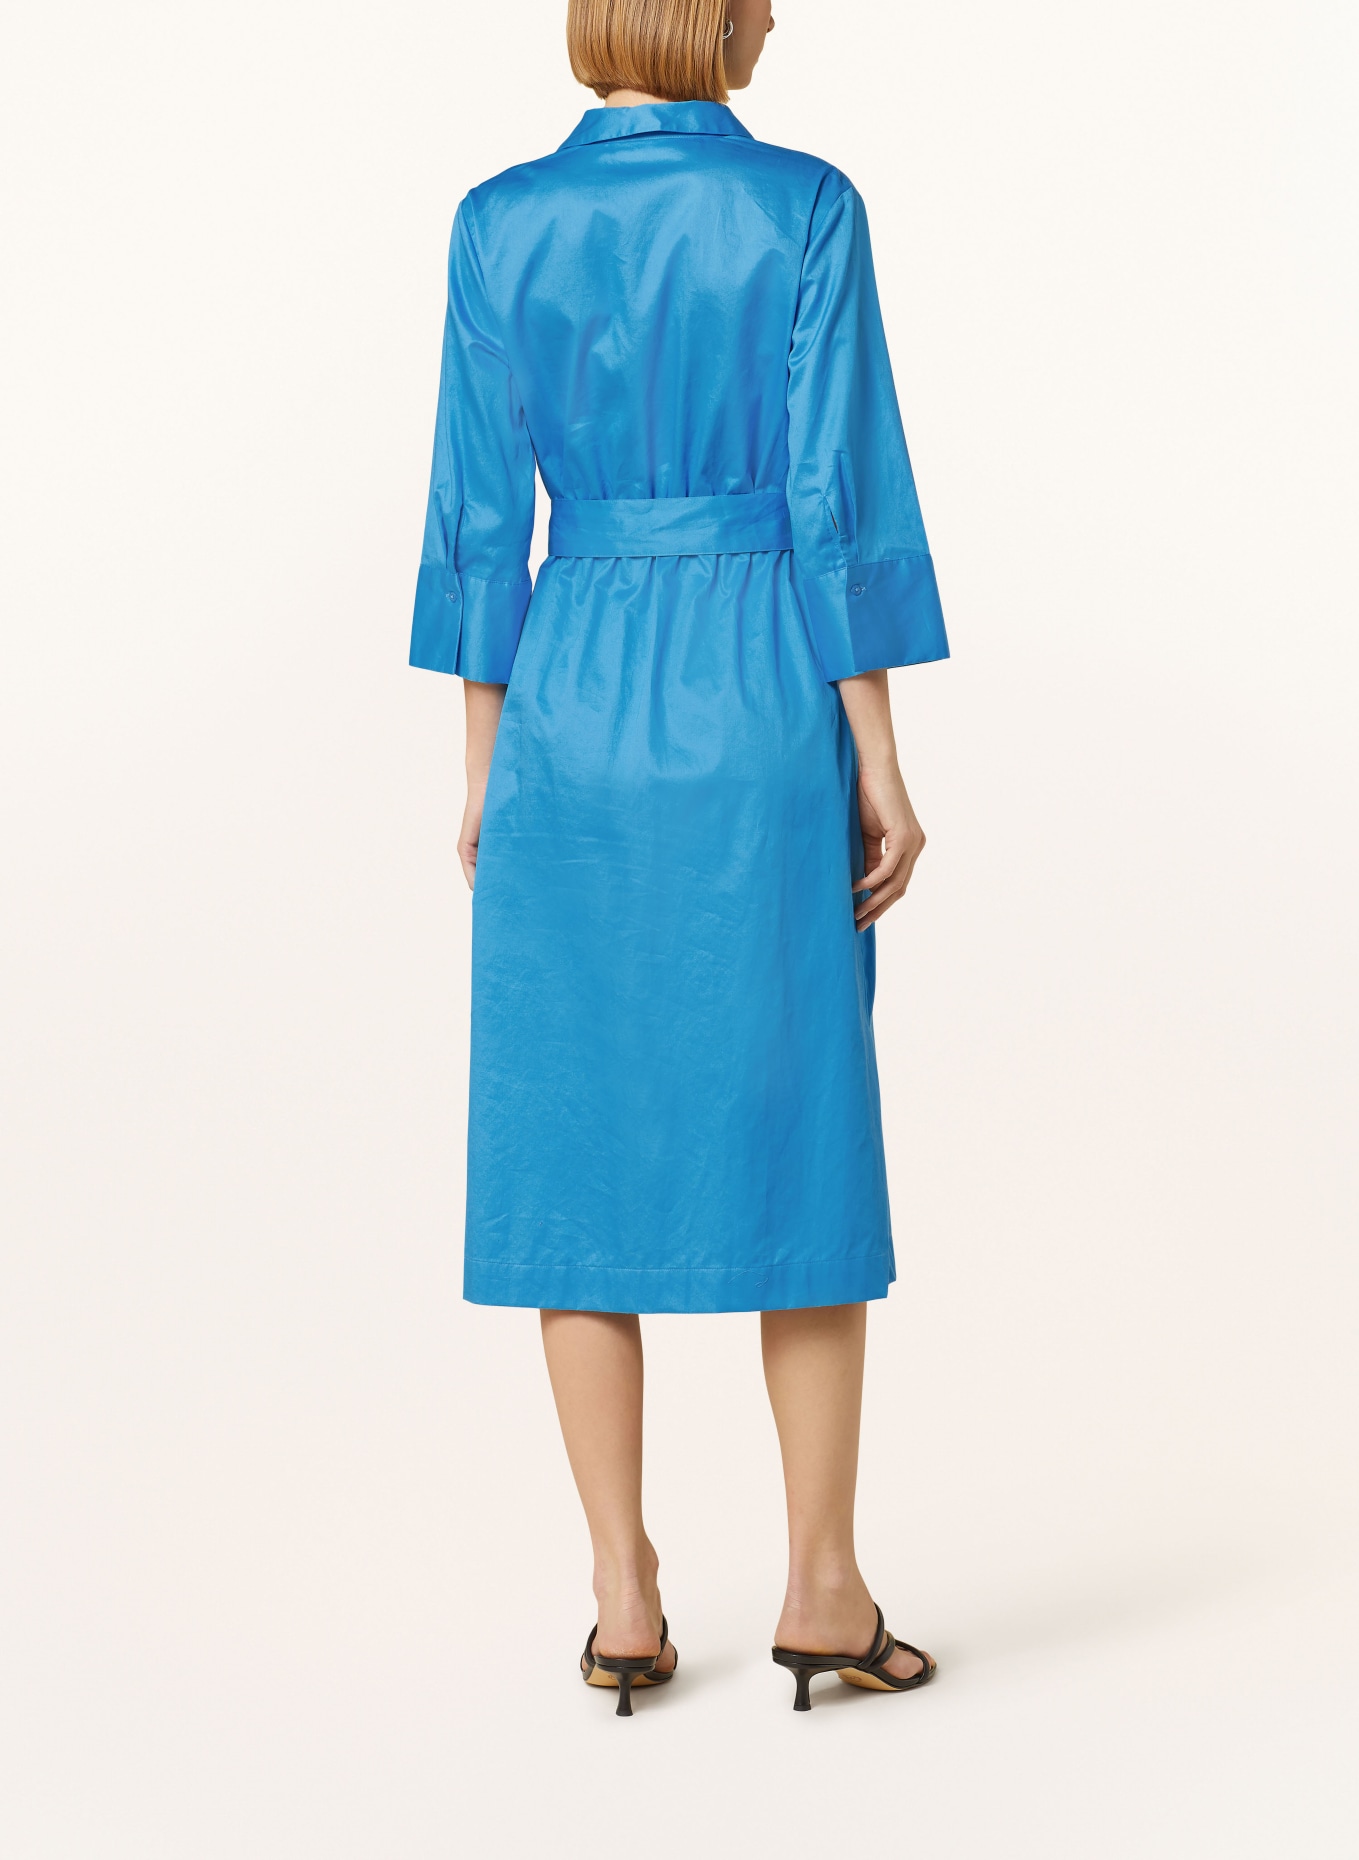 s.Oliver BLACK LABEL Shirt dress with 3/4 sleeves, Color: BLUE (Image 3)